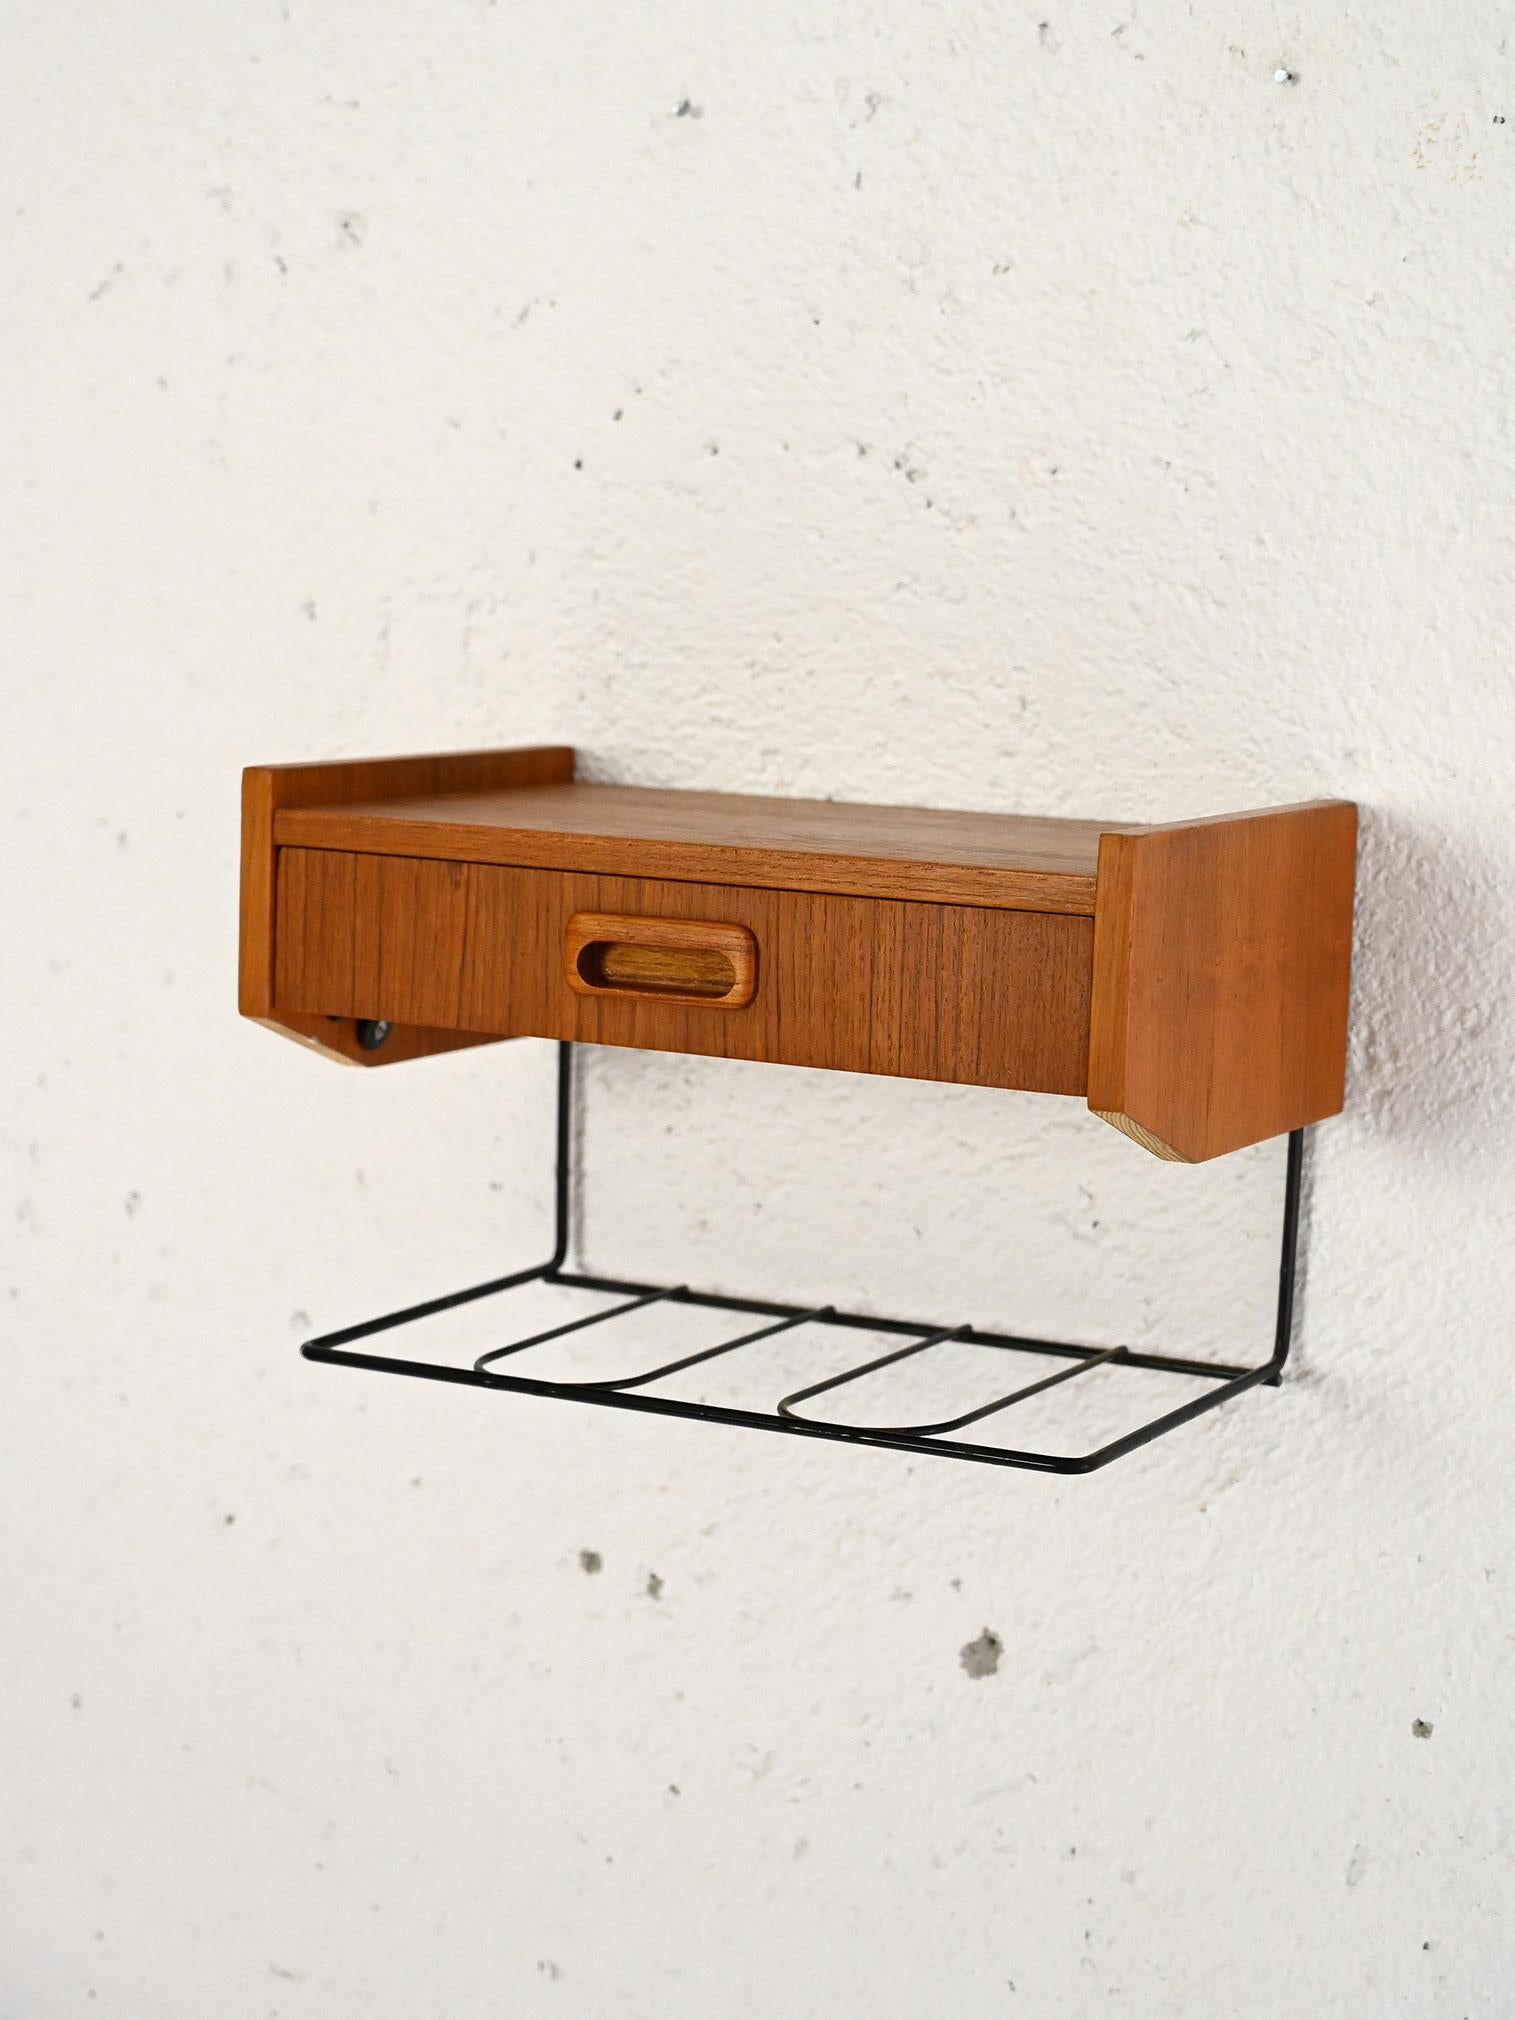 Vintage-Regal aus Teakholz aus den 1960er Jahren.

Ein originelles Stück, bestehend aus einer Teakholzplatte mit einer Schublade mit geschnitztem Holzgriff und einem Rahmen mit einer Metallablage. Ideal als Nachttisch für das Schlafzimmer, aber auch